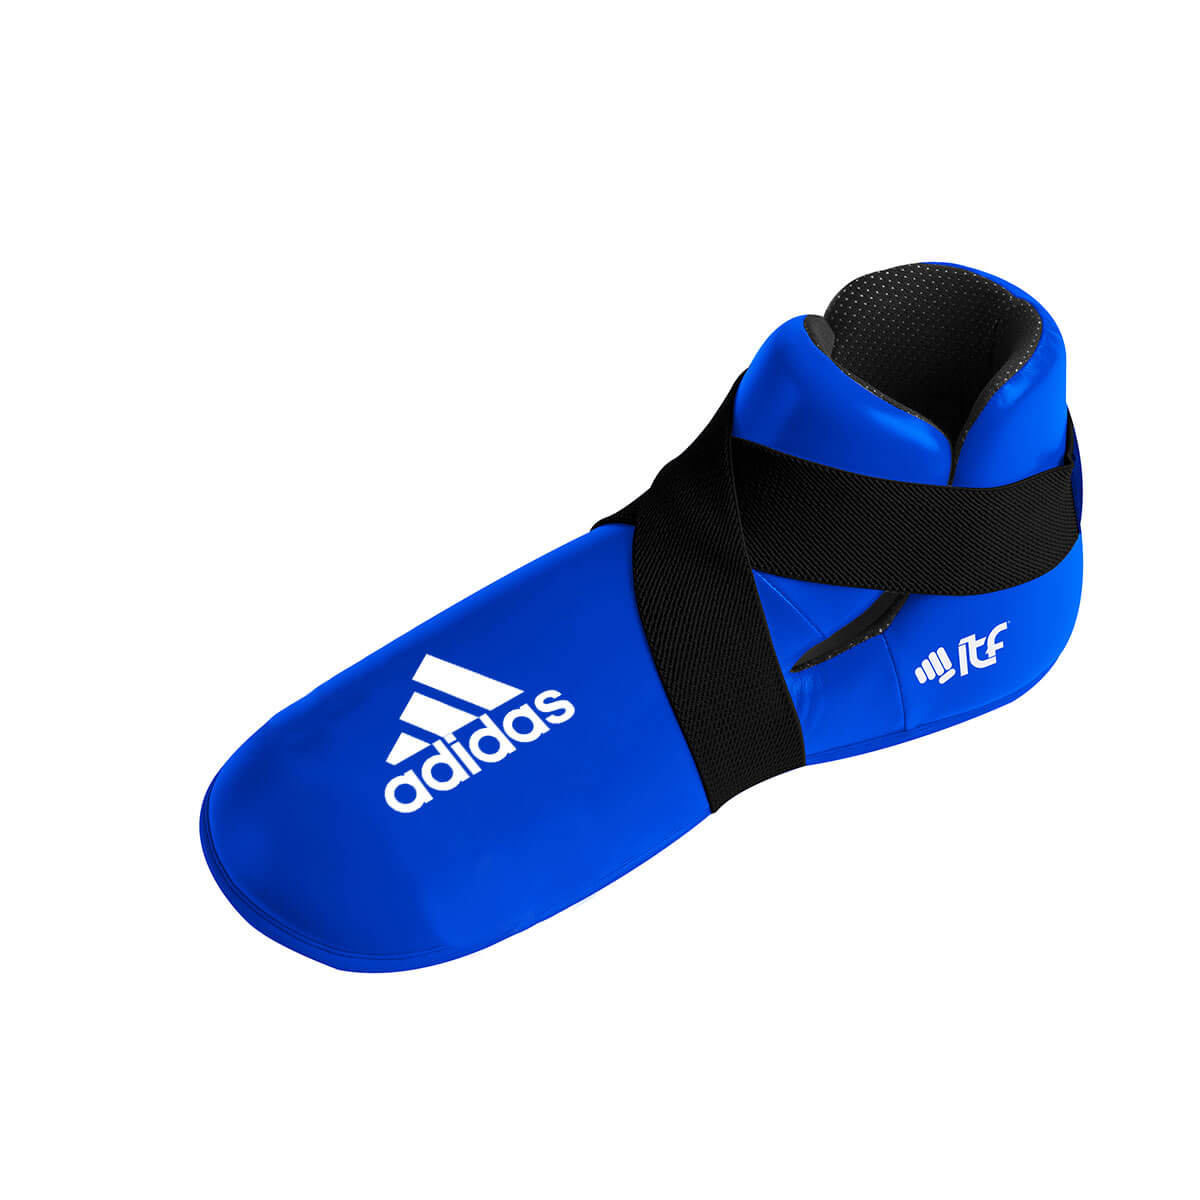 Adiitfb01 Kick Boots Itf Blue New Logot